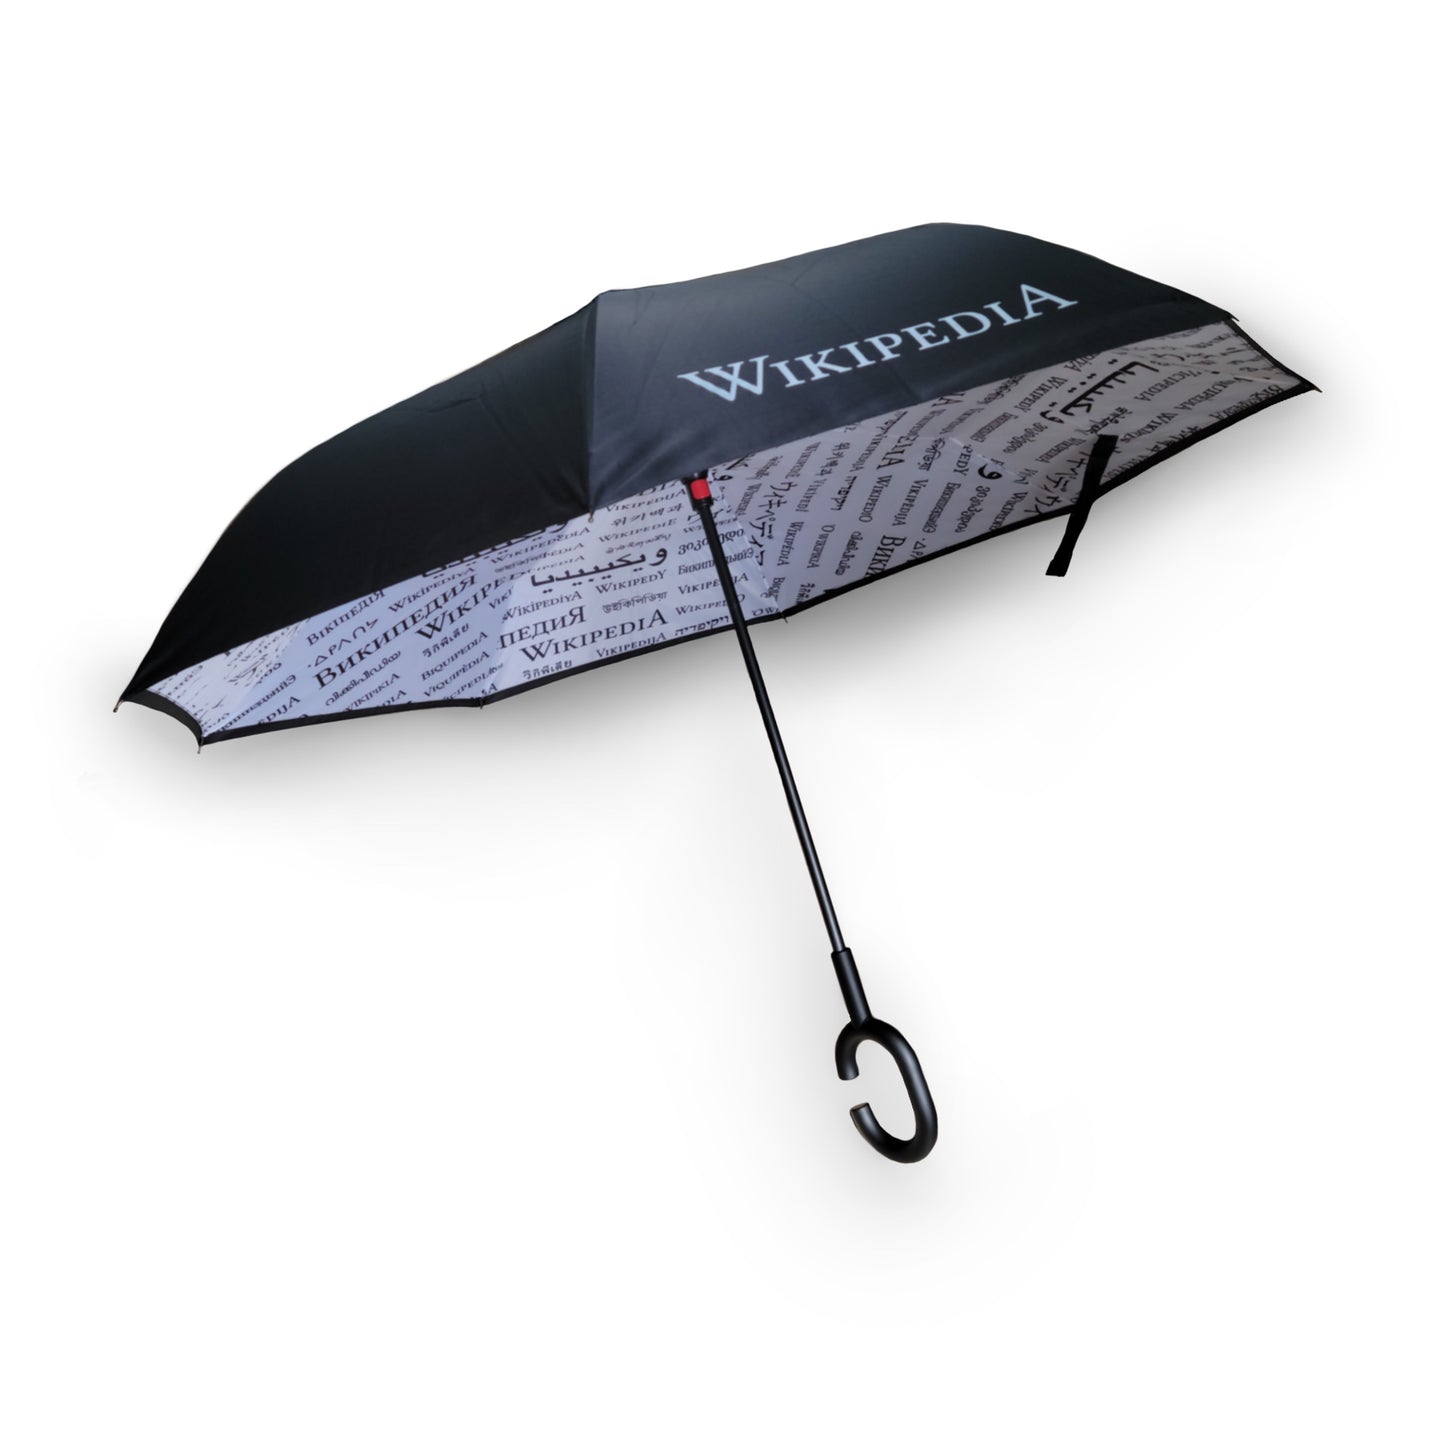 Parapluie linguistique Wikipedia